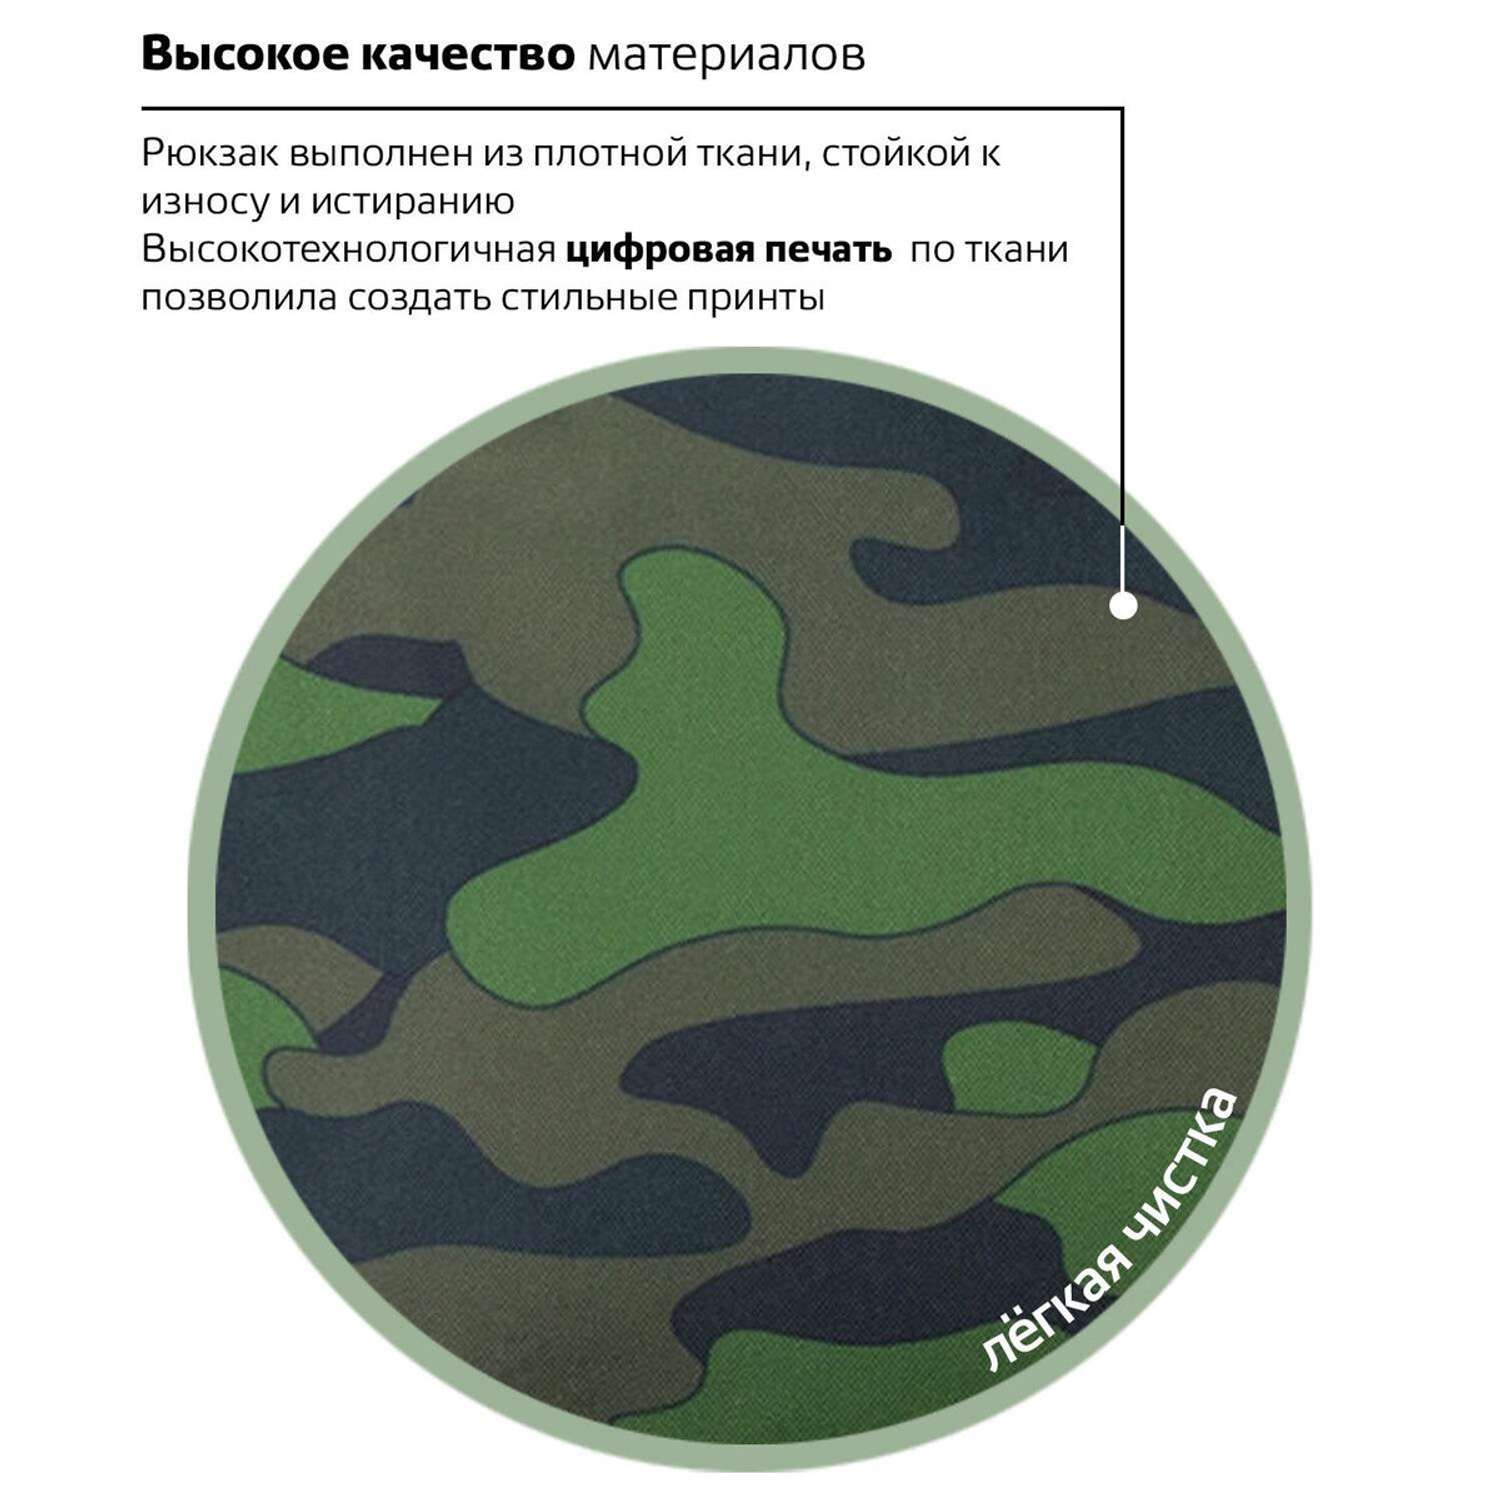 Рюкзак Brauberg универсальный сити-формат Зеленый камуфляж 41х32х14 см - фото 8